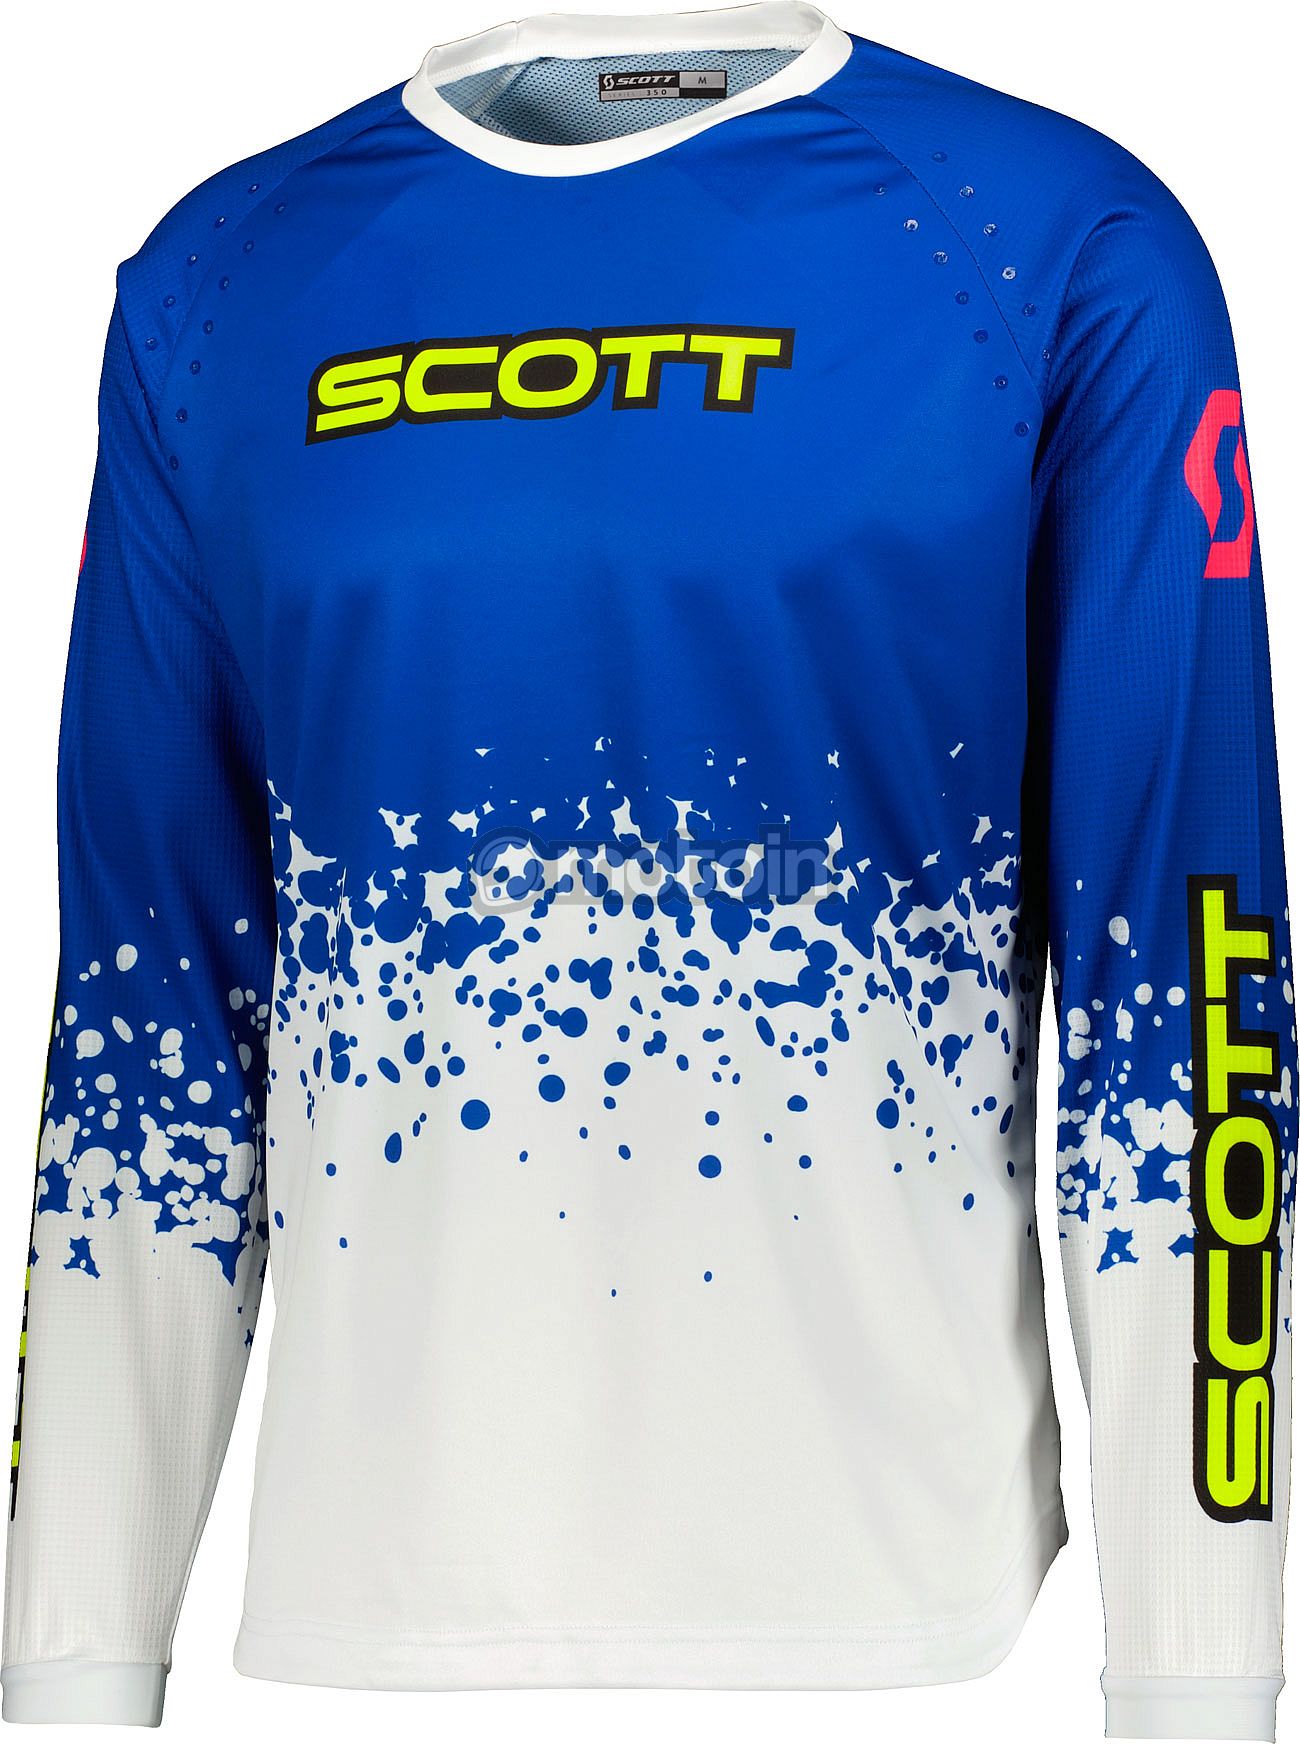 Scott 350 Race Evo S22, jersey